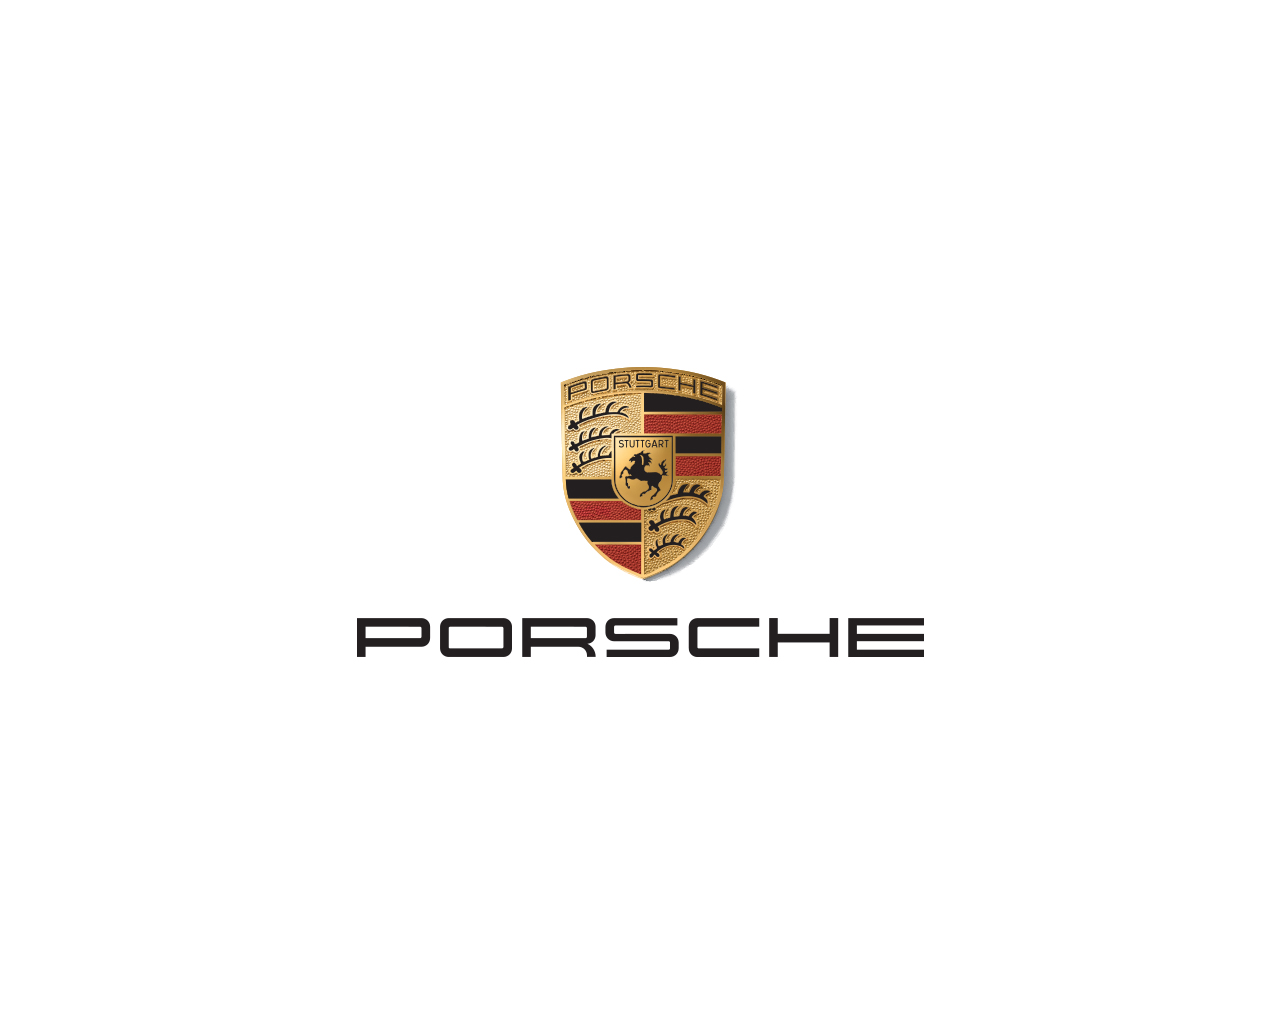 Porsche Parts Department Manager